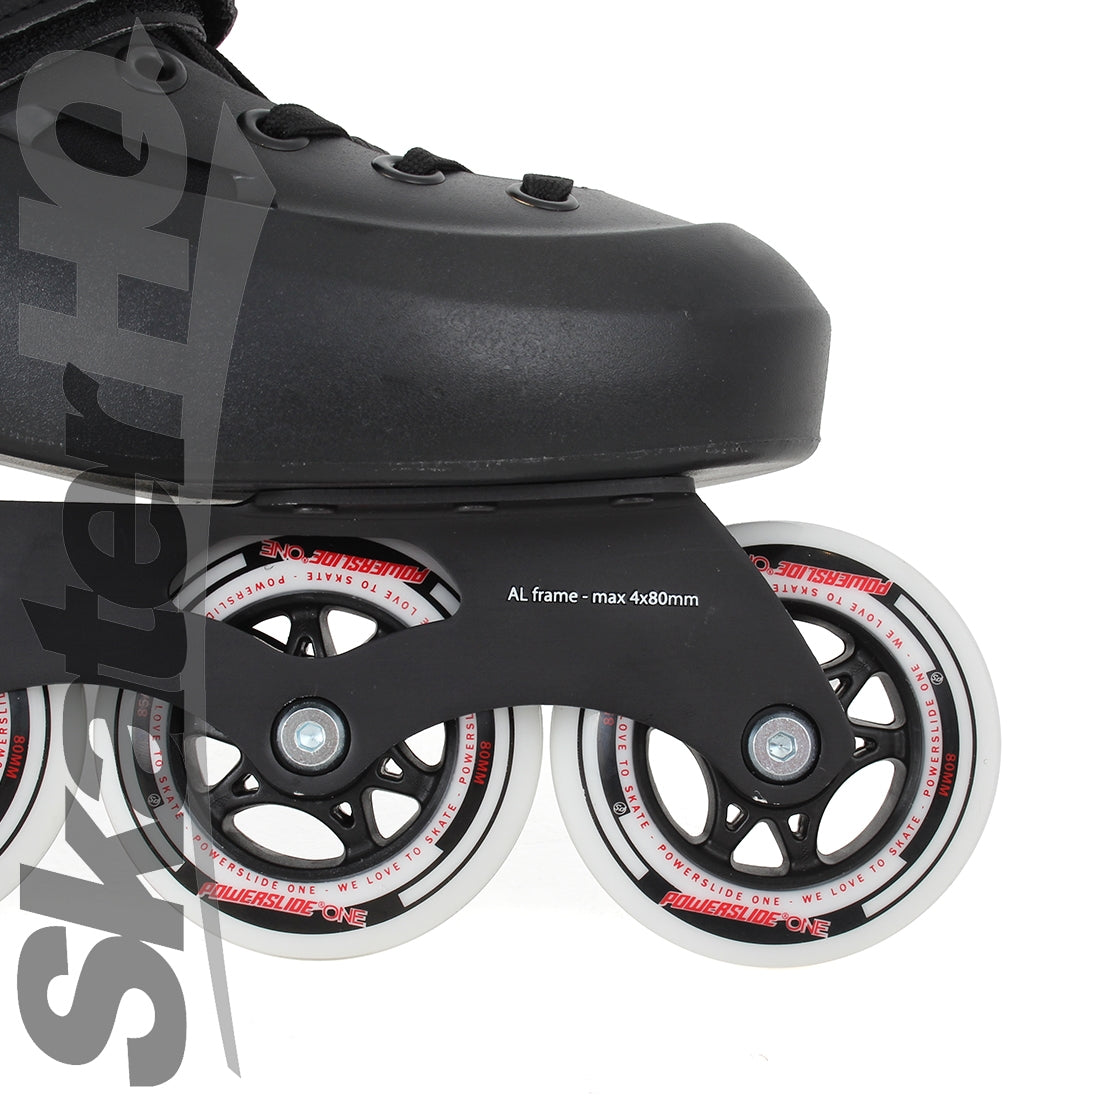 Powerslide Zoom Black 80 EU45-46 / 11-12US Inline Aggressive Skates